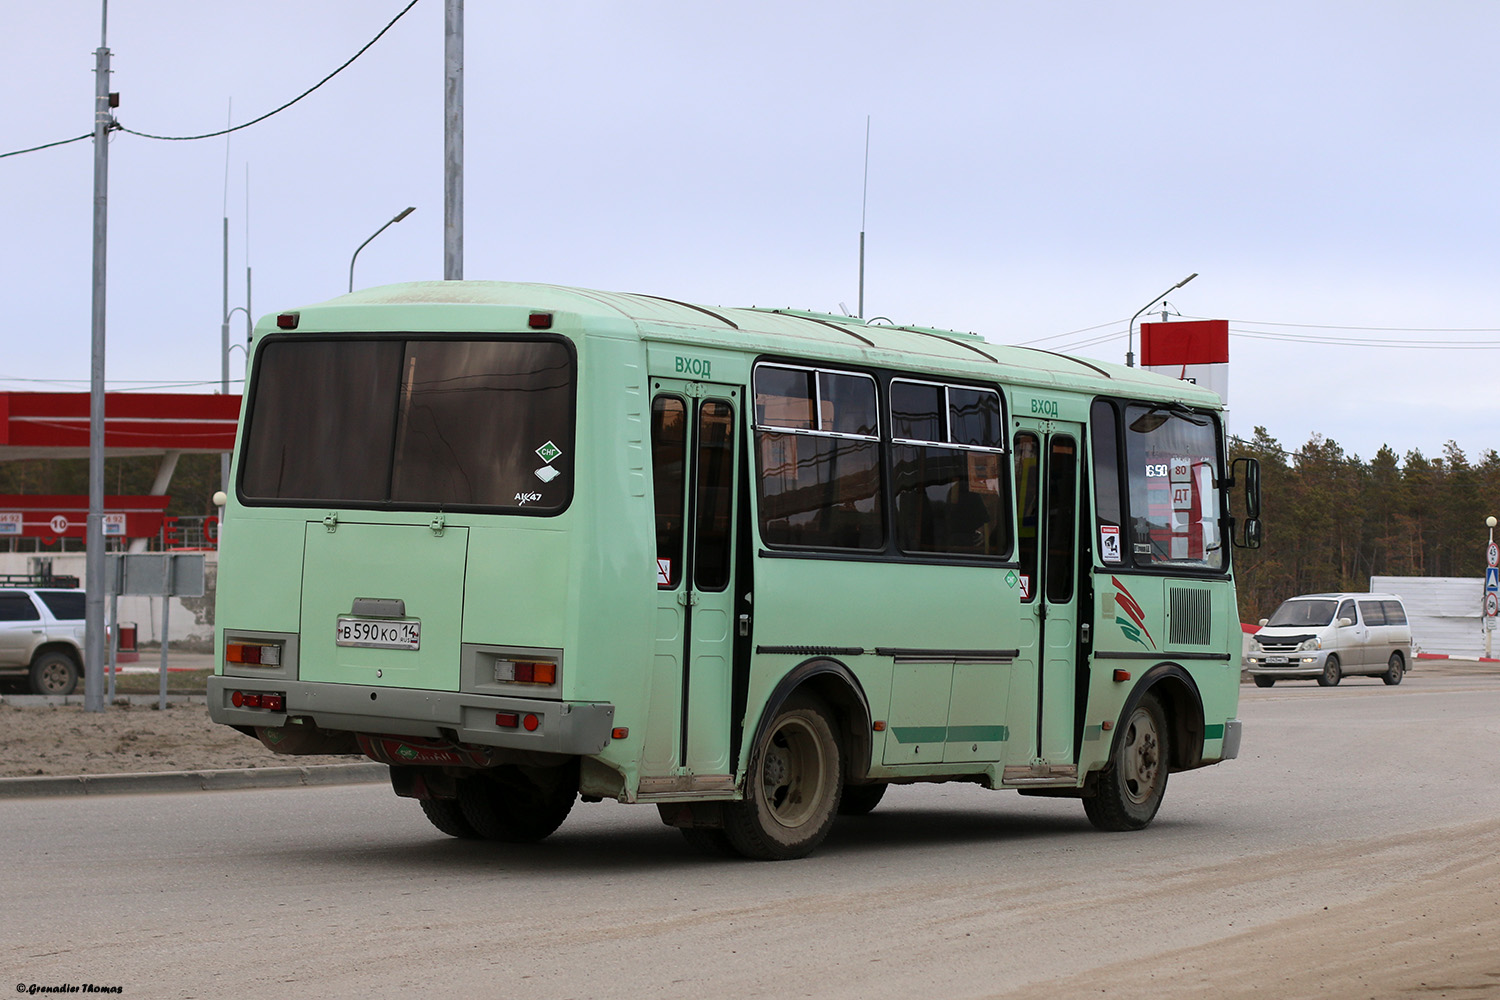 Саха (Якутия), ПАЗ-32054 № В 590 КО 14